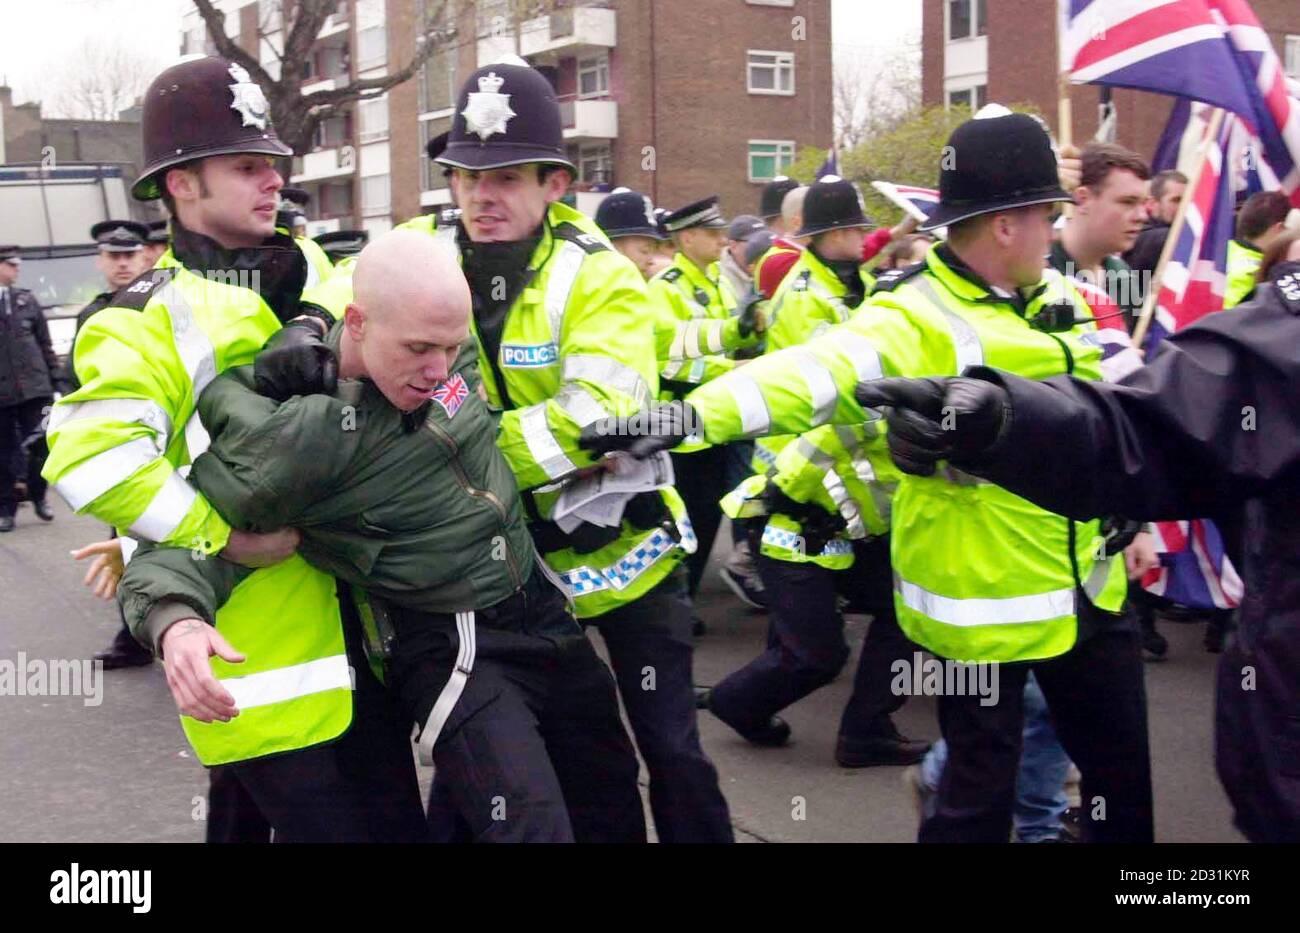 La policía frenó a un marchante en una marcha del frente Nacional en Bermondsey, Londres. Los activistas contra el racismo fueron indignados en la marcha del segundo fin de semana consecutivo. Un hombre asiático fue golpeado en un ataque racista por 10 hombres blancos apenas horas después de la manifestación del sábado pasado *... en Bermondsey, al sudeste de Londres. Foto de stock